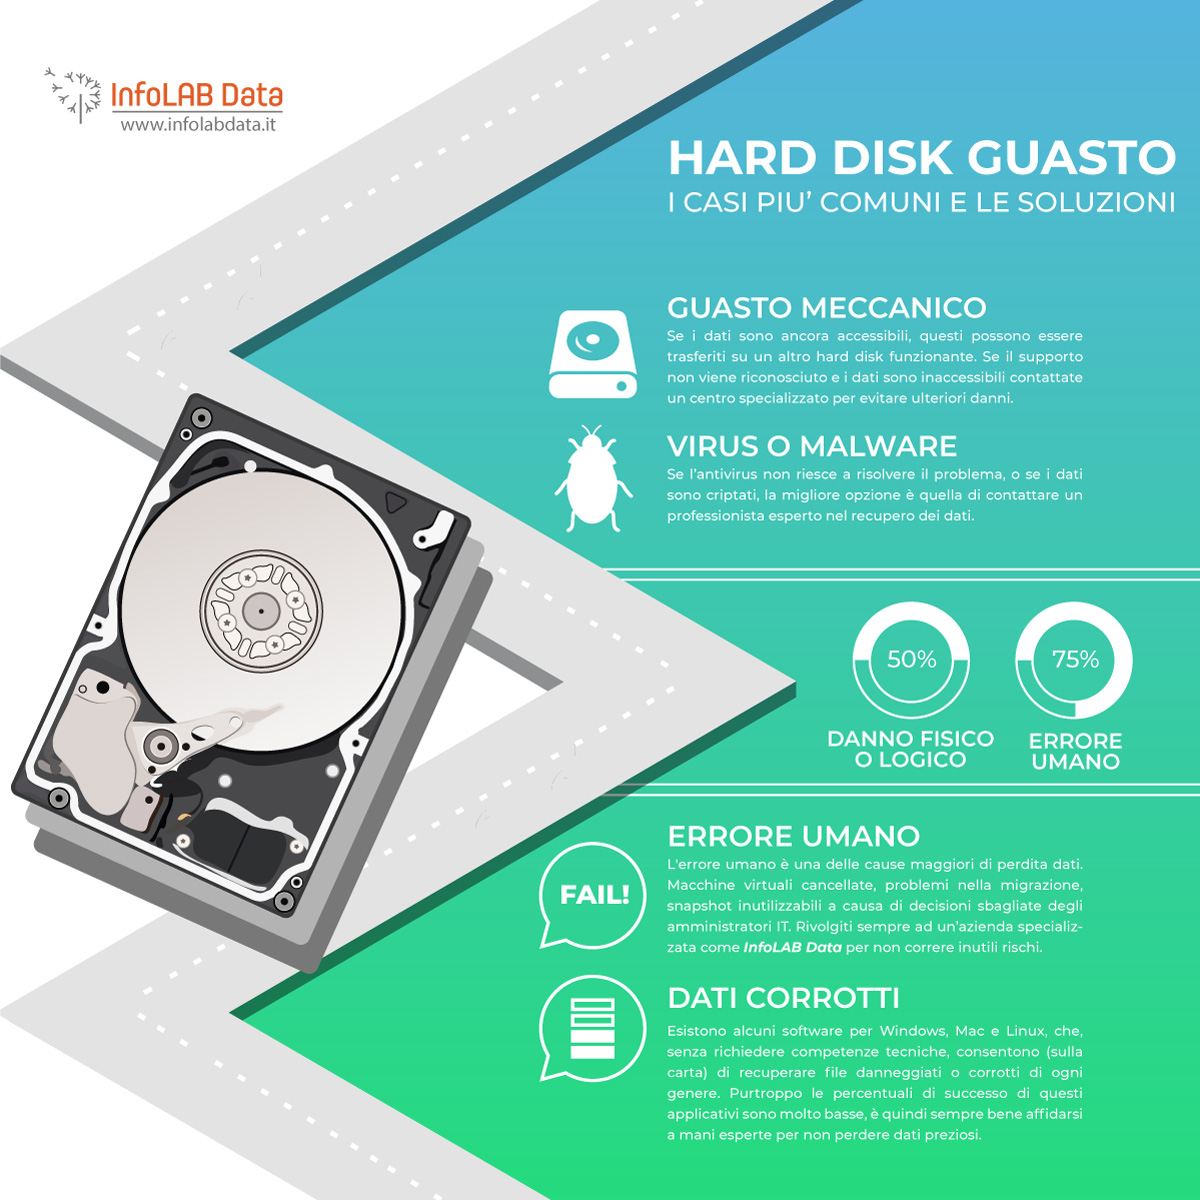 HD guasto, hard disk danneggiato